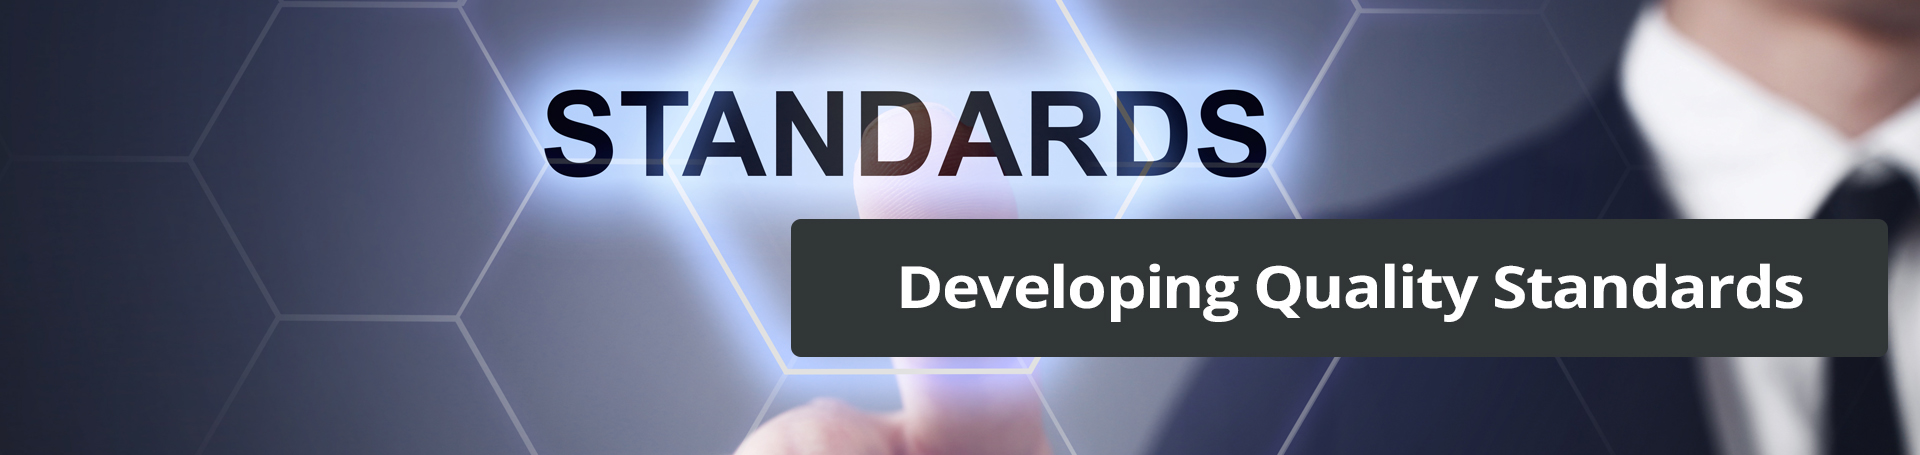 Standards banner image